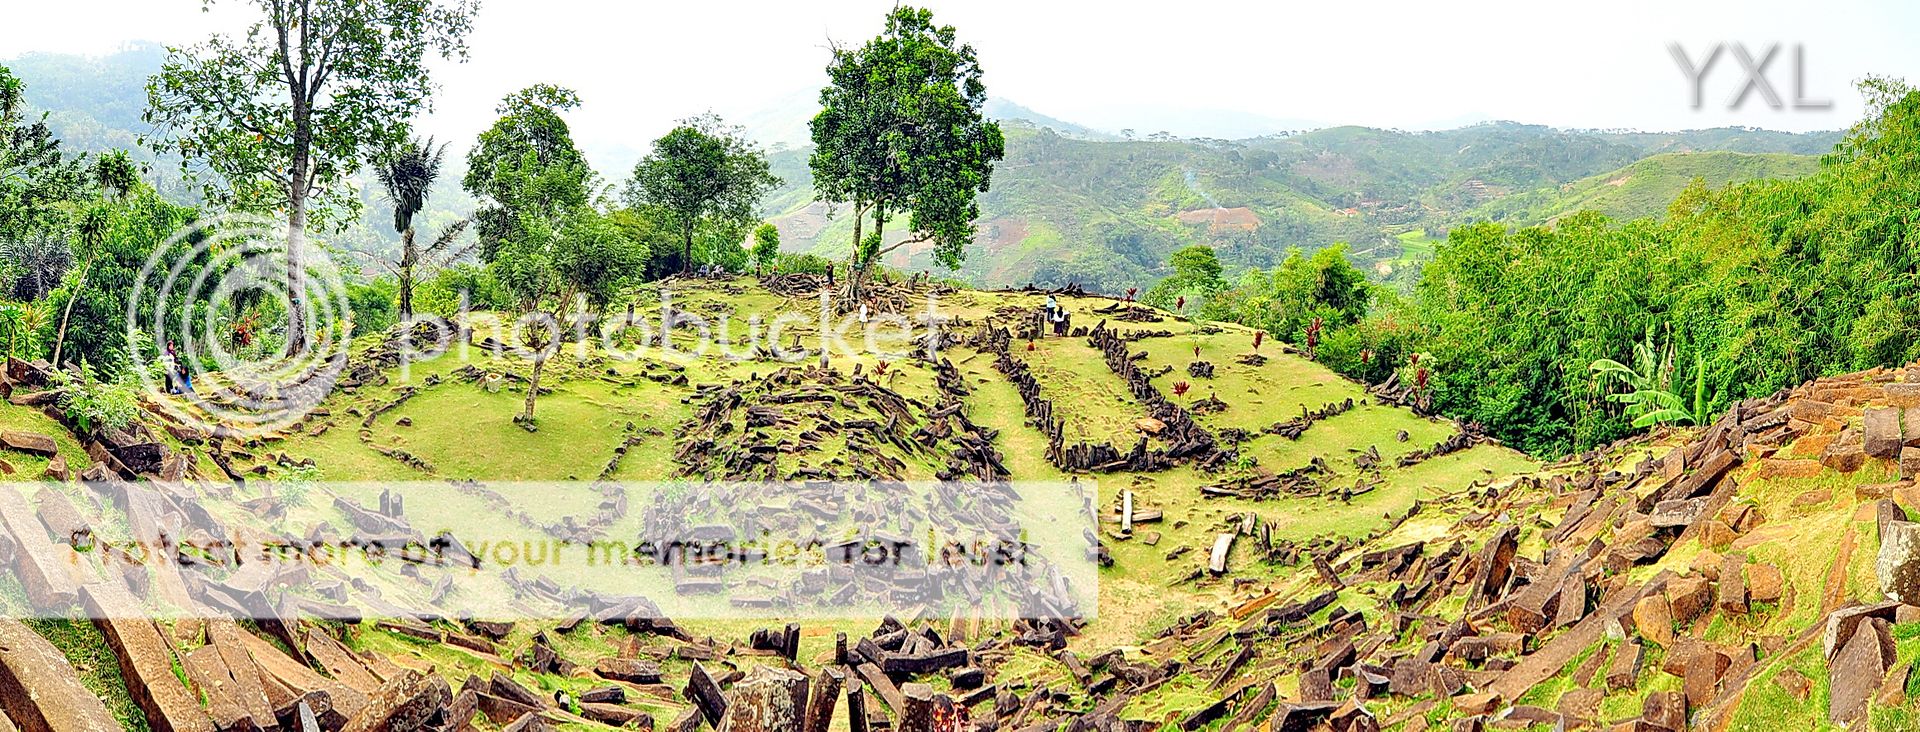 Situs Megalitikum Gunung  Padang Cianjur  KASKUS ARCHIVE